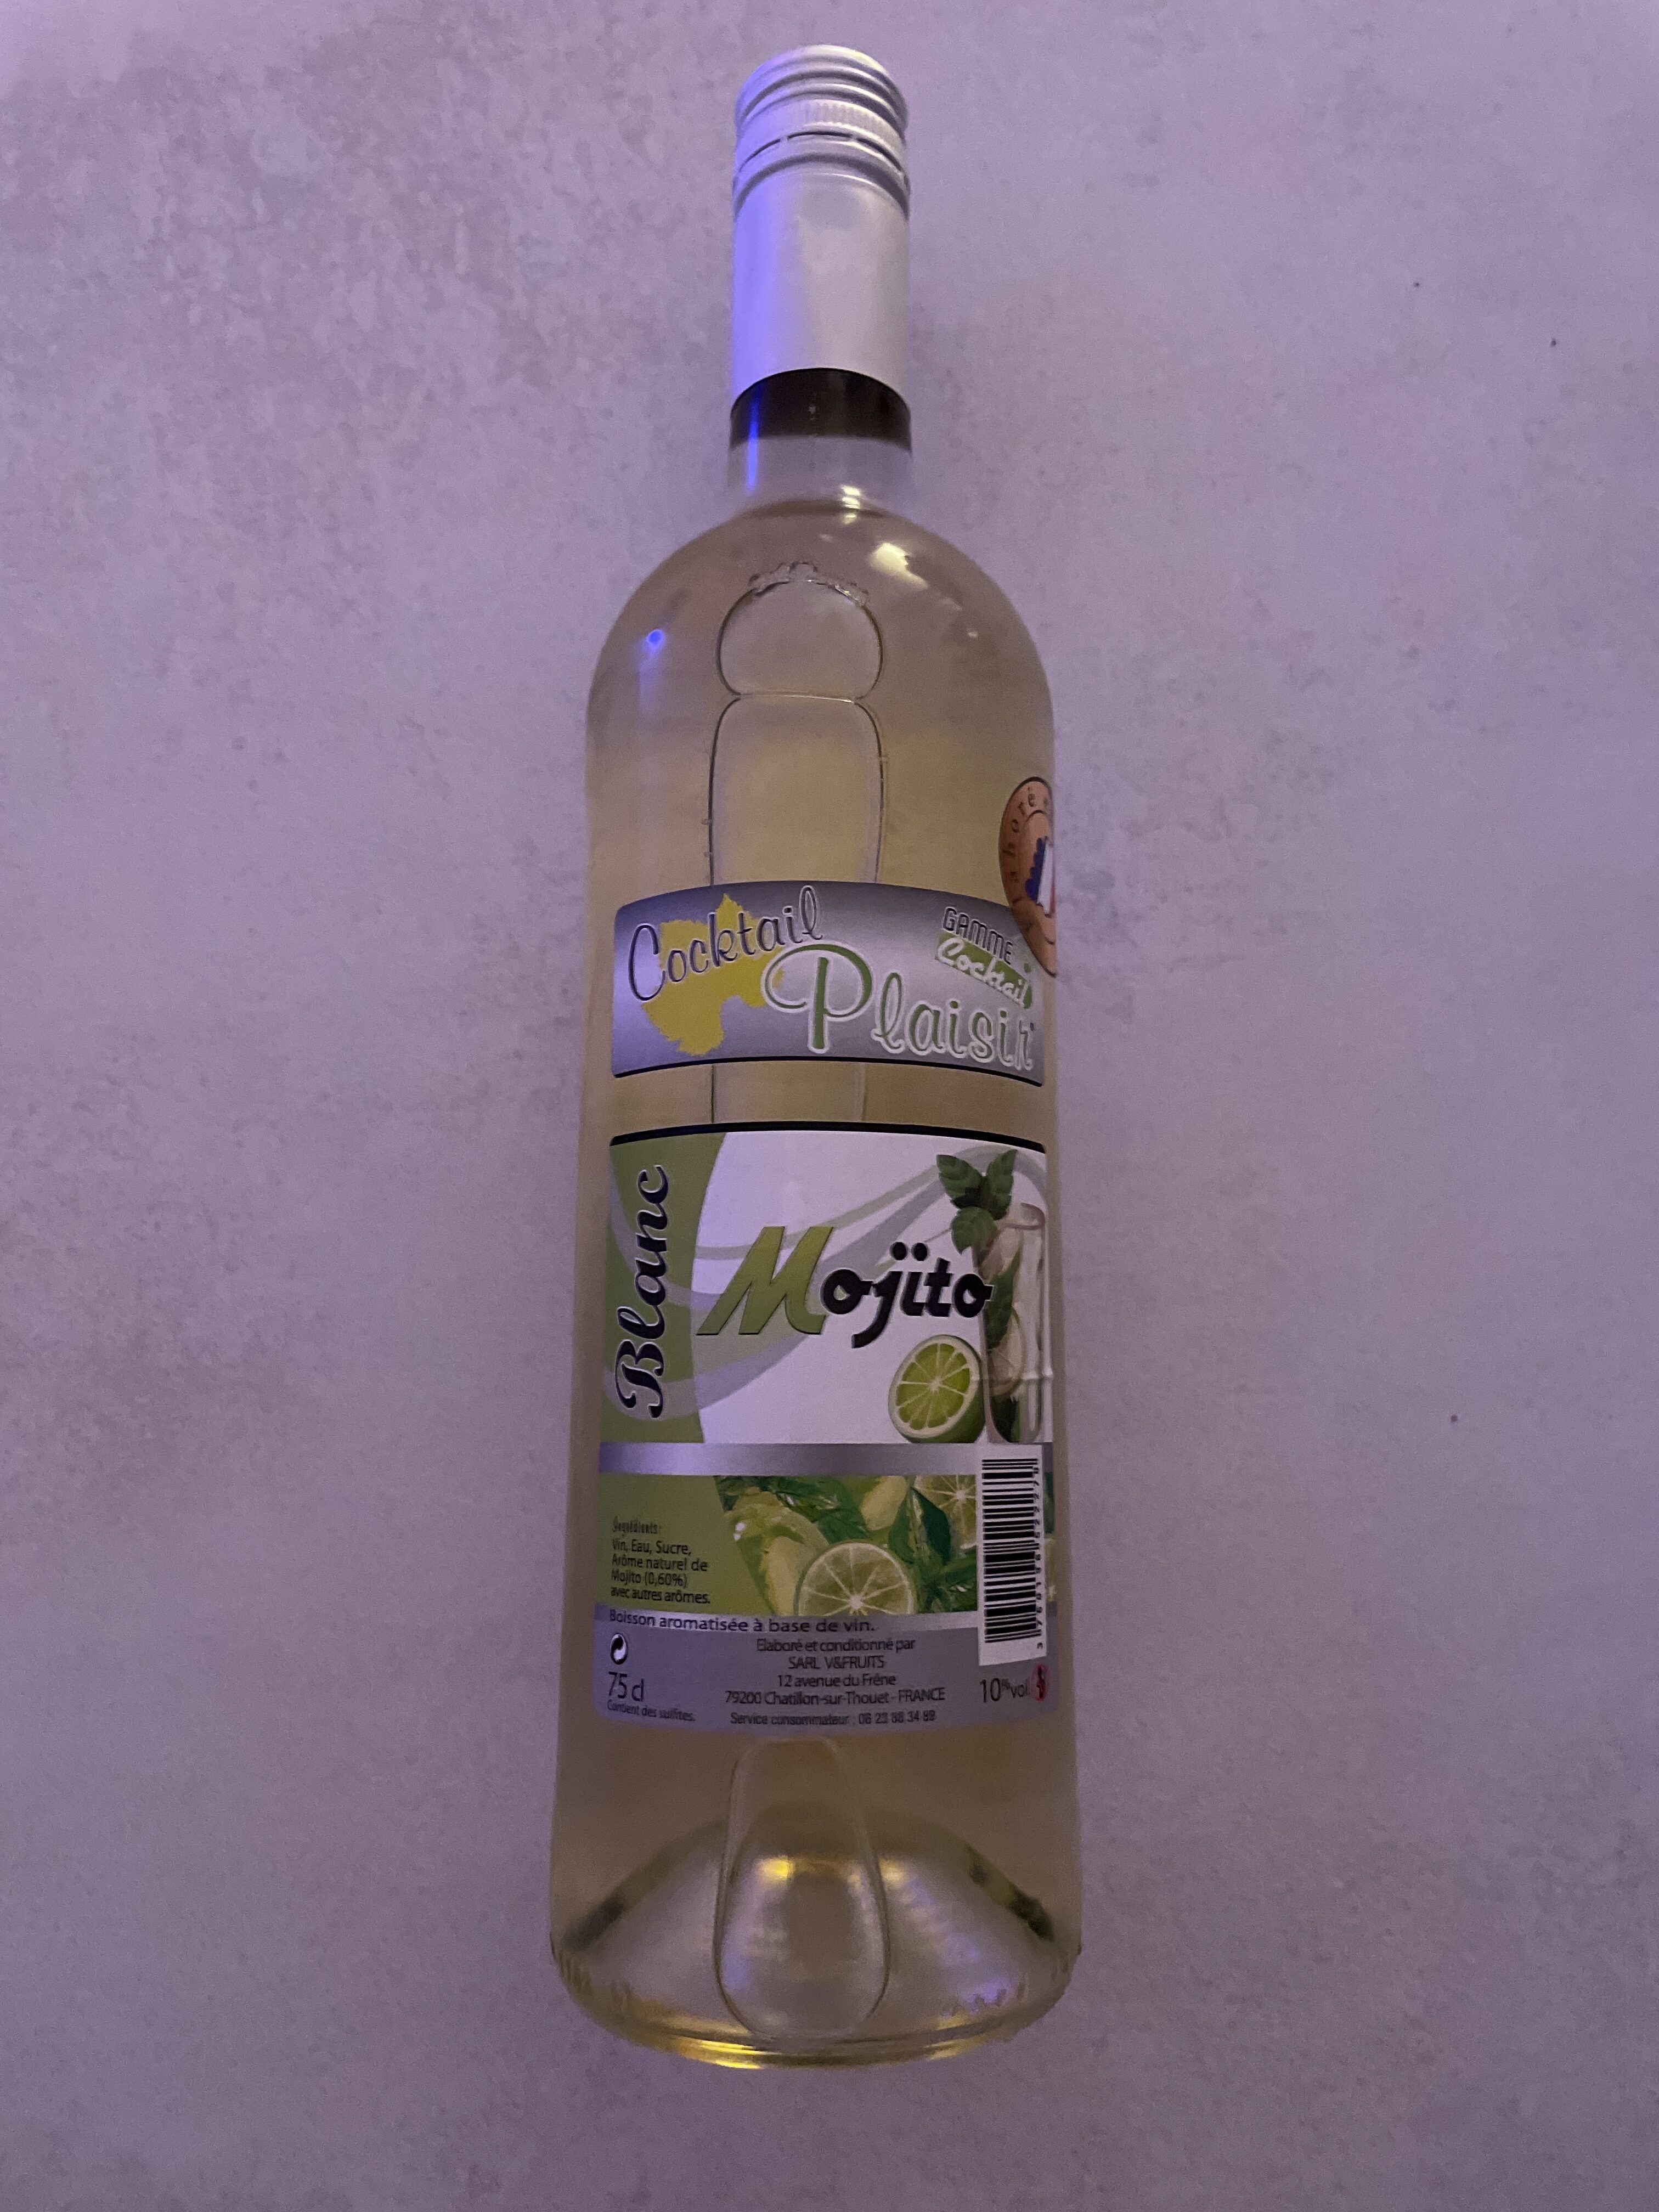 Vin blanc mojito - Produit - fr